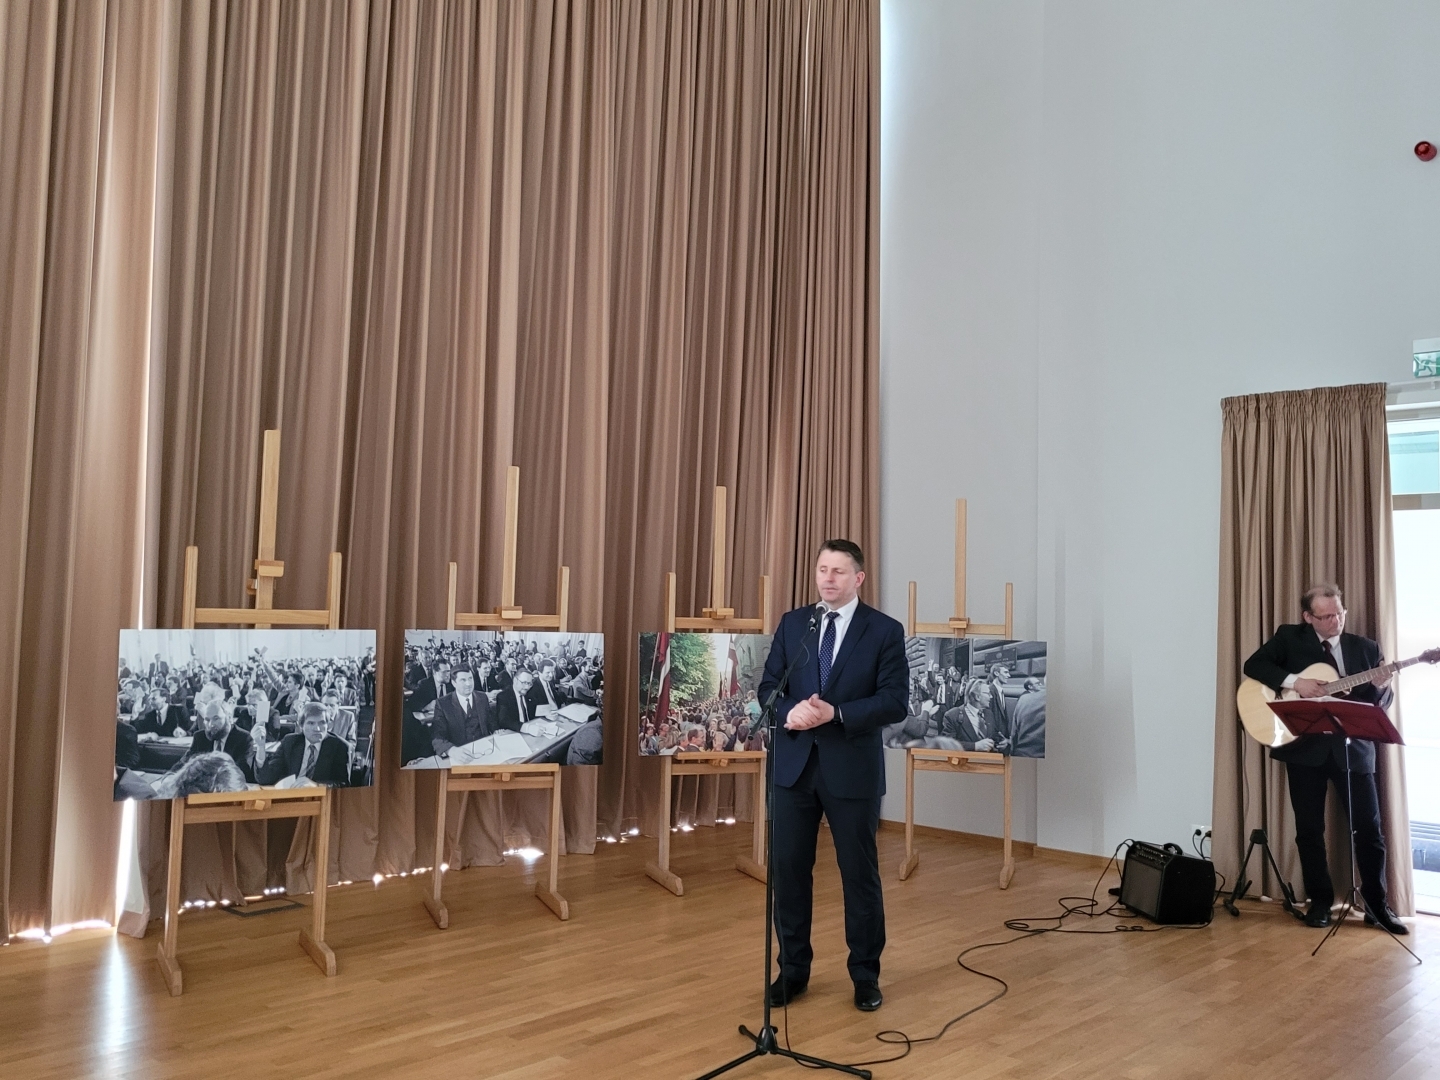 Krāsains foto, Balvu novada pašvaldības domes priekšsēdētājs Sergejs Maksimovs